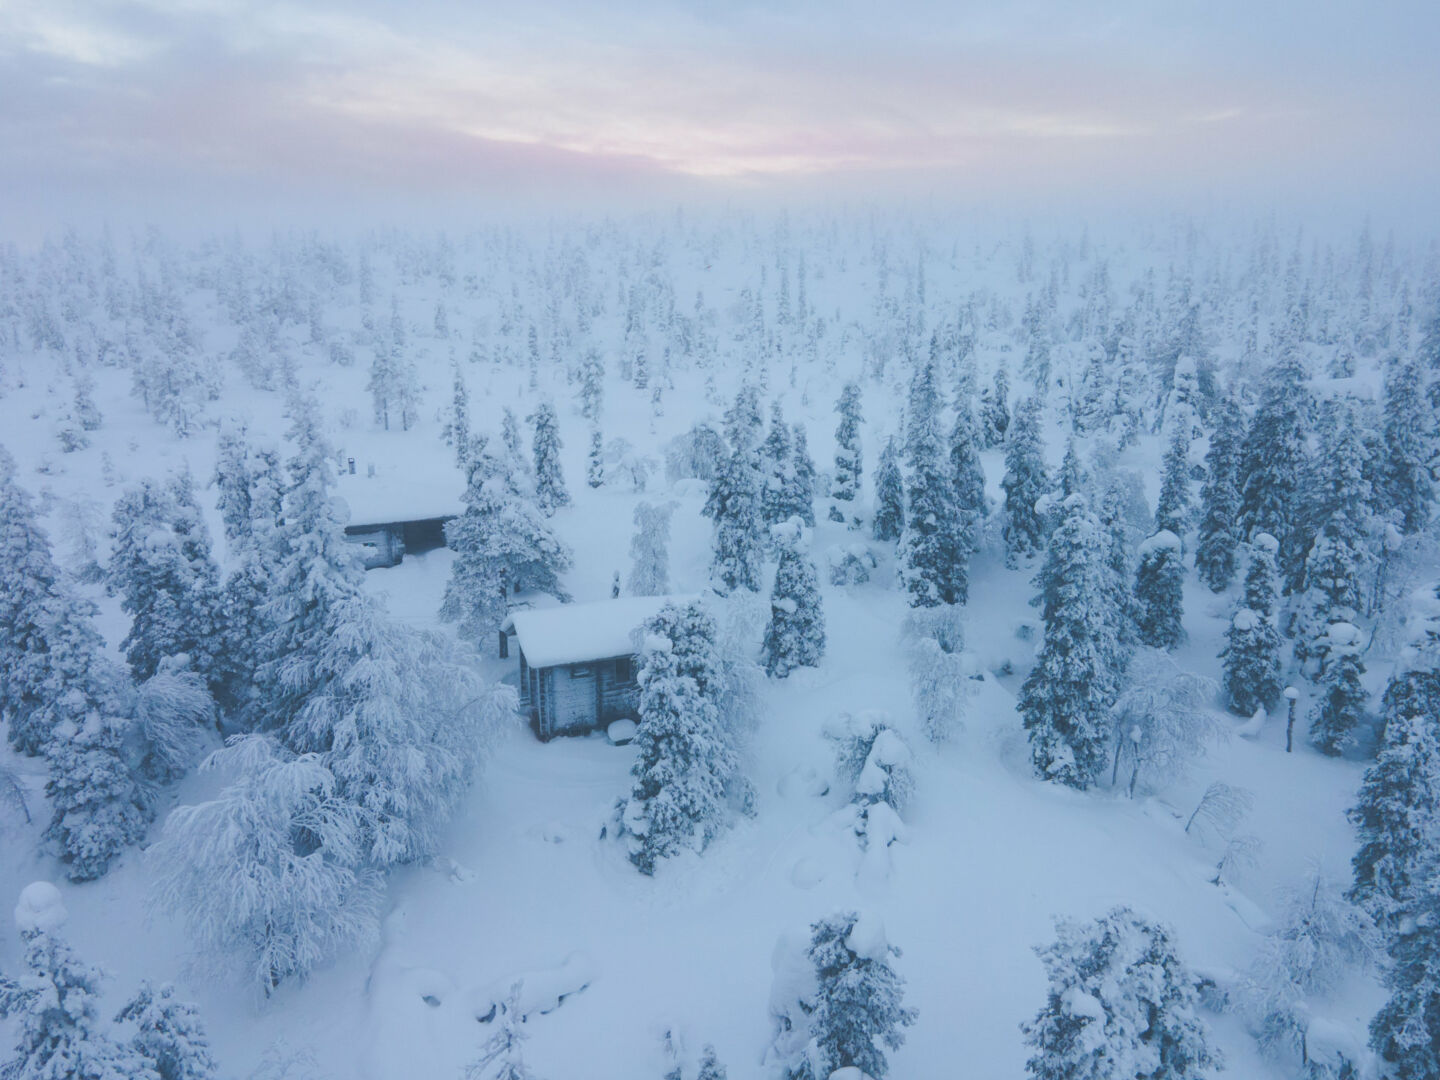 Salla, Finland in winter, a stand-in location for Siberia